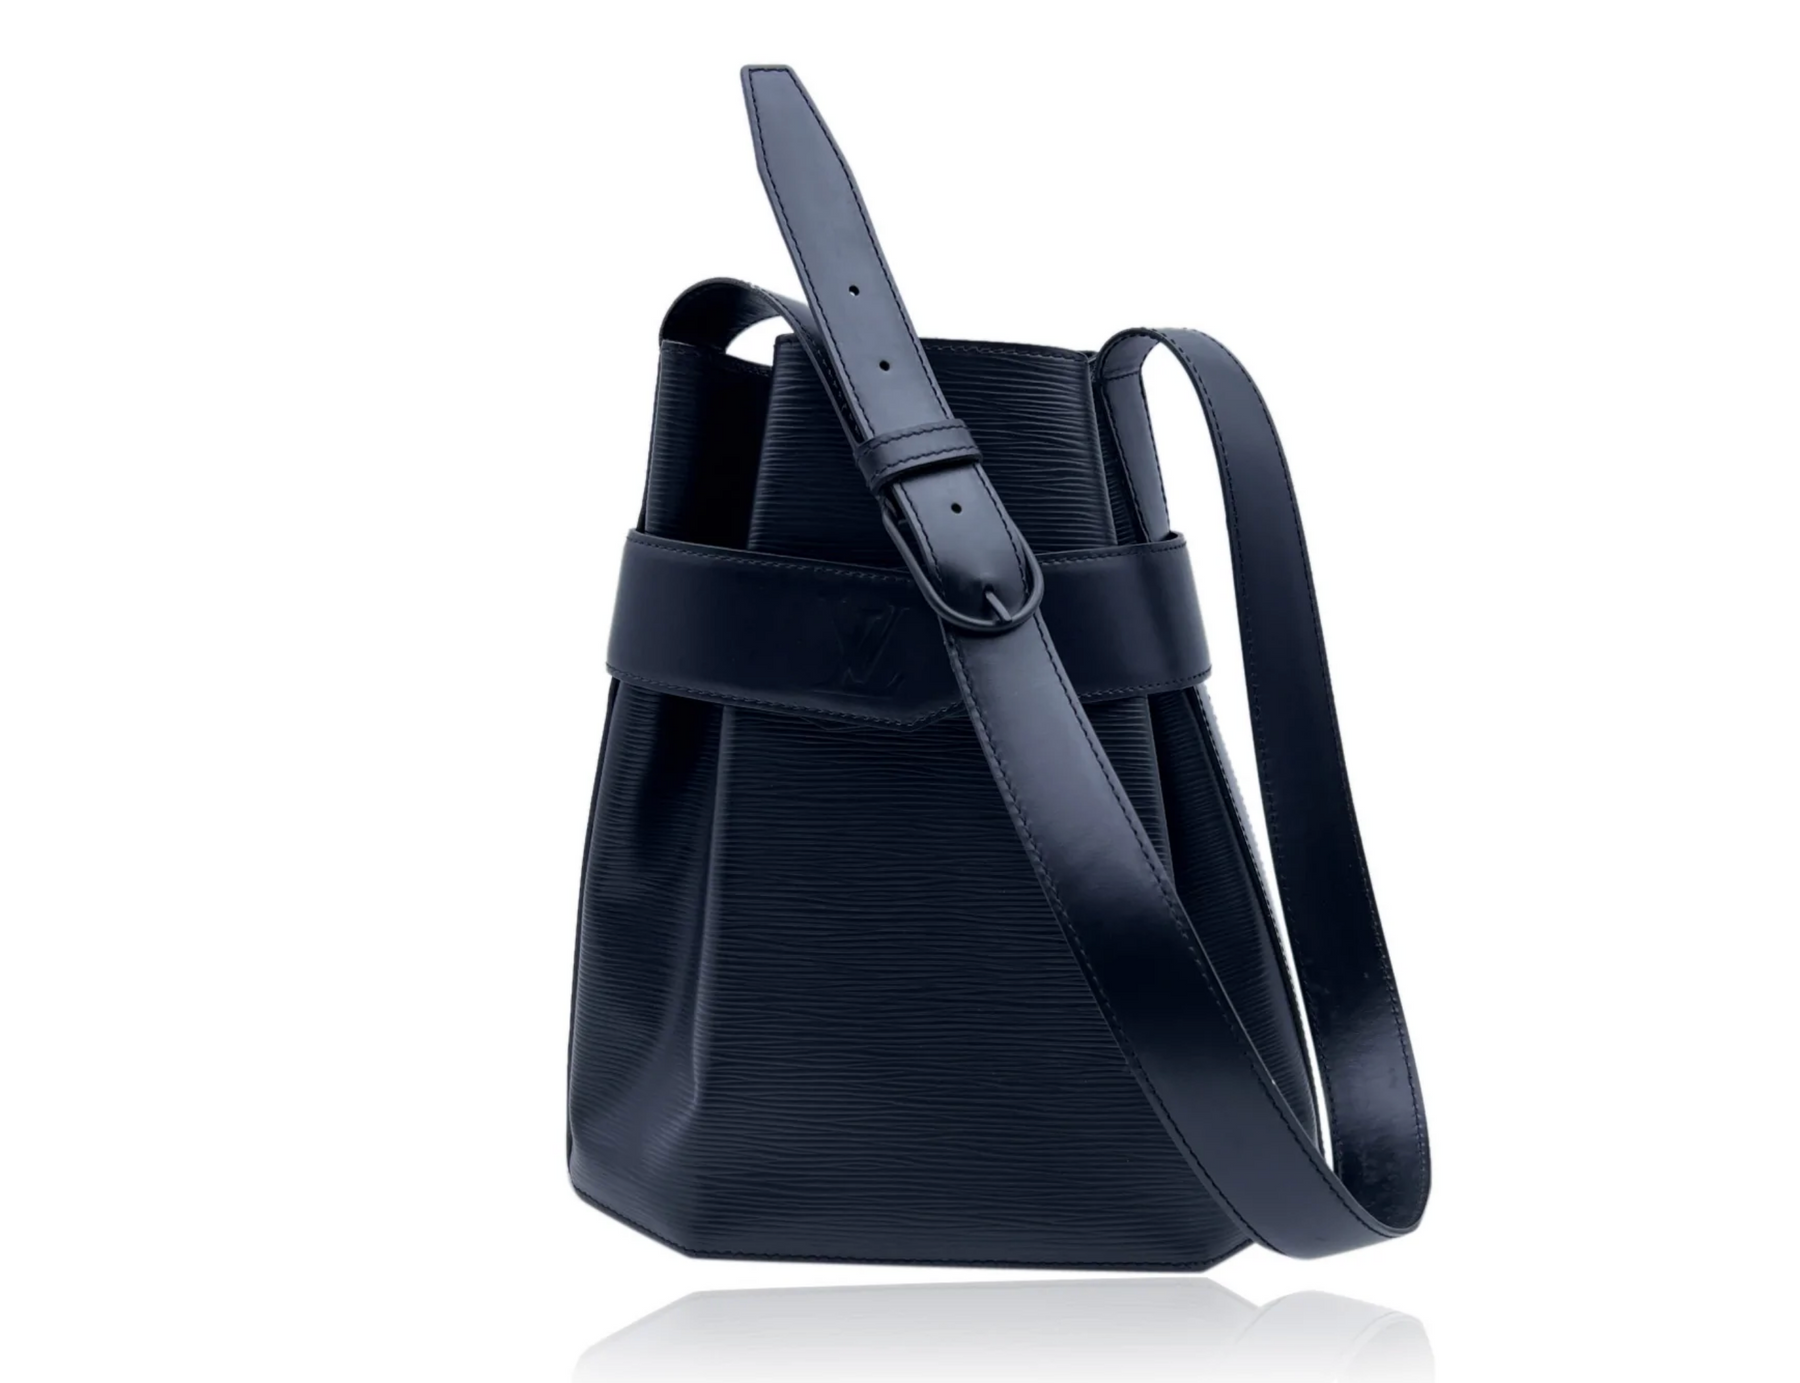 Louis Vuitton Sac D'Epaule PM Epi Leather Shoulder Bag on SALE